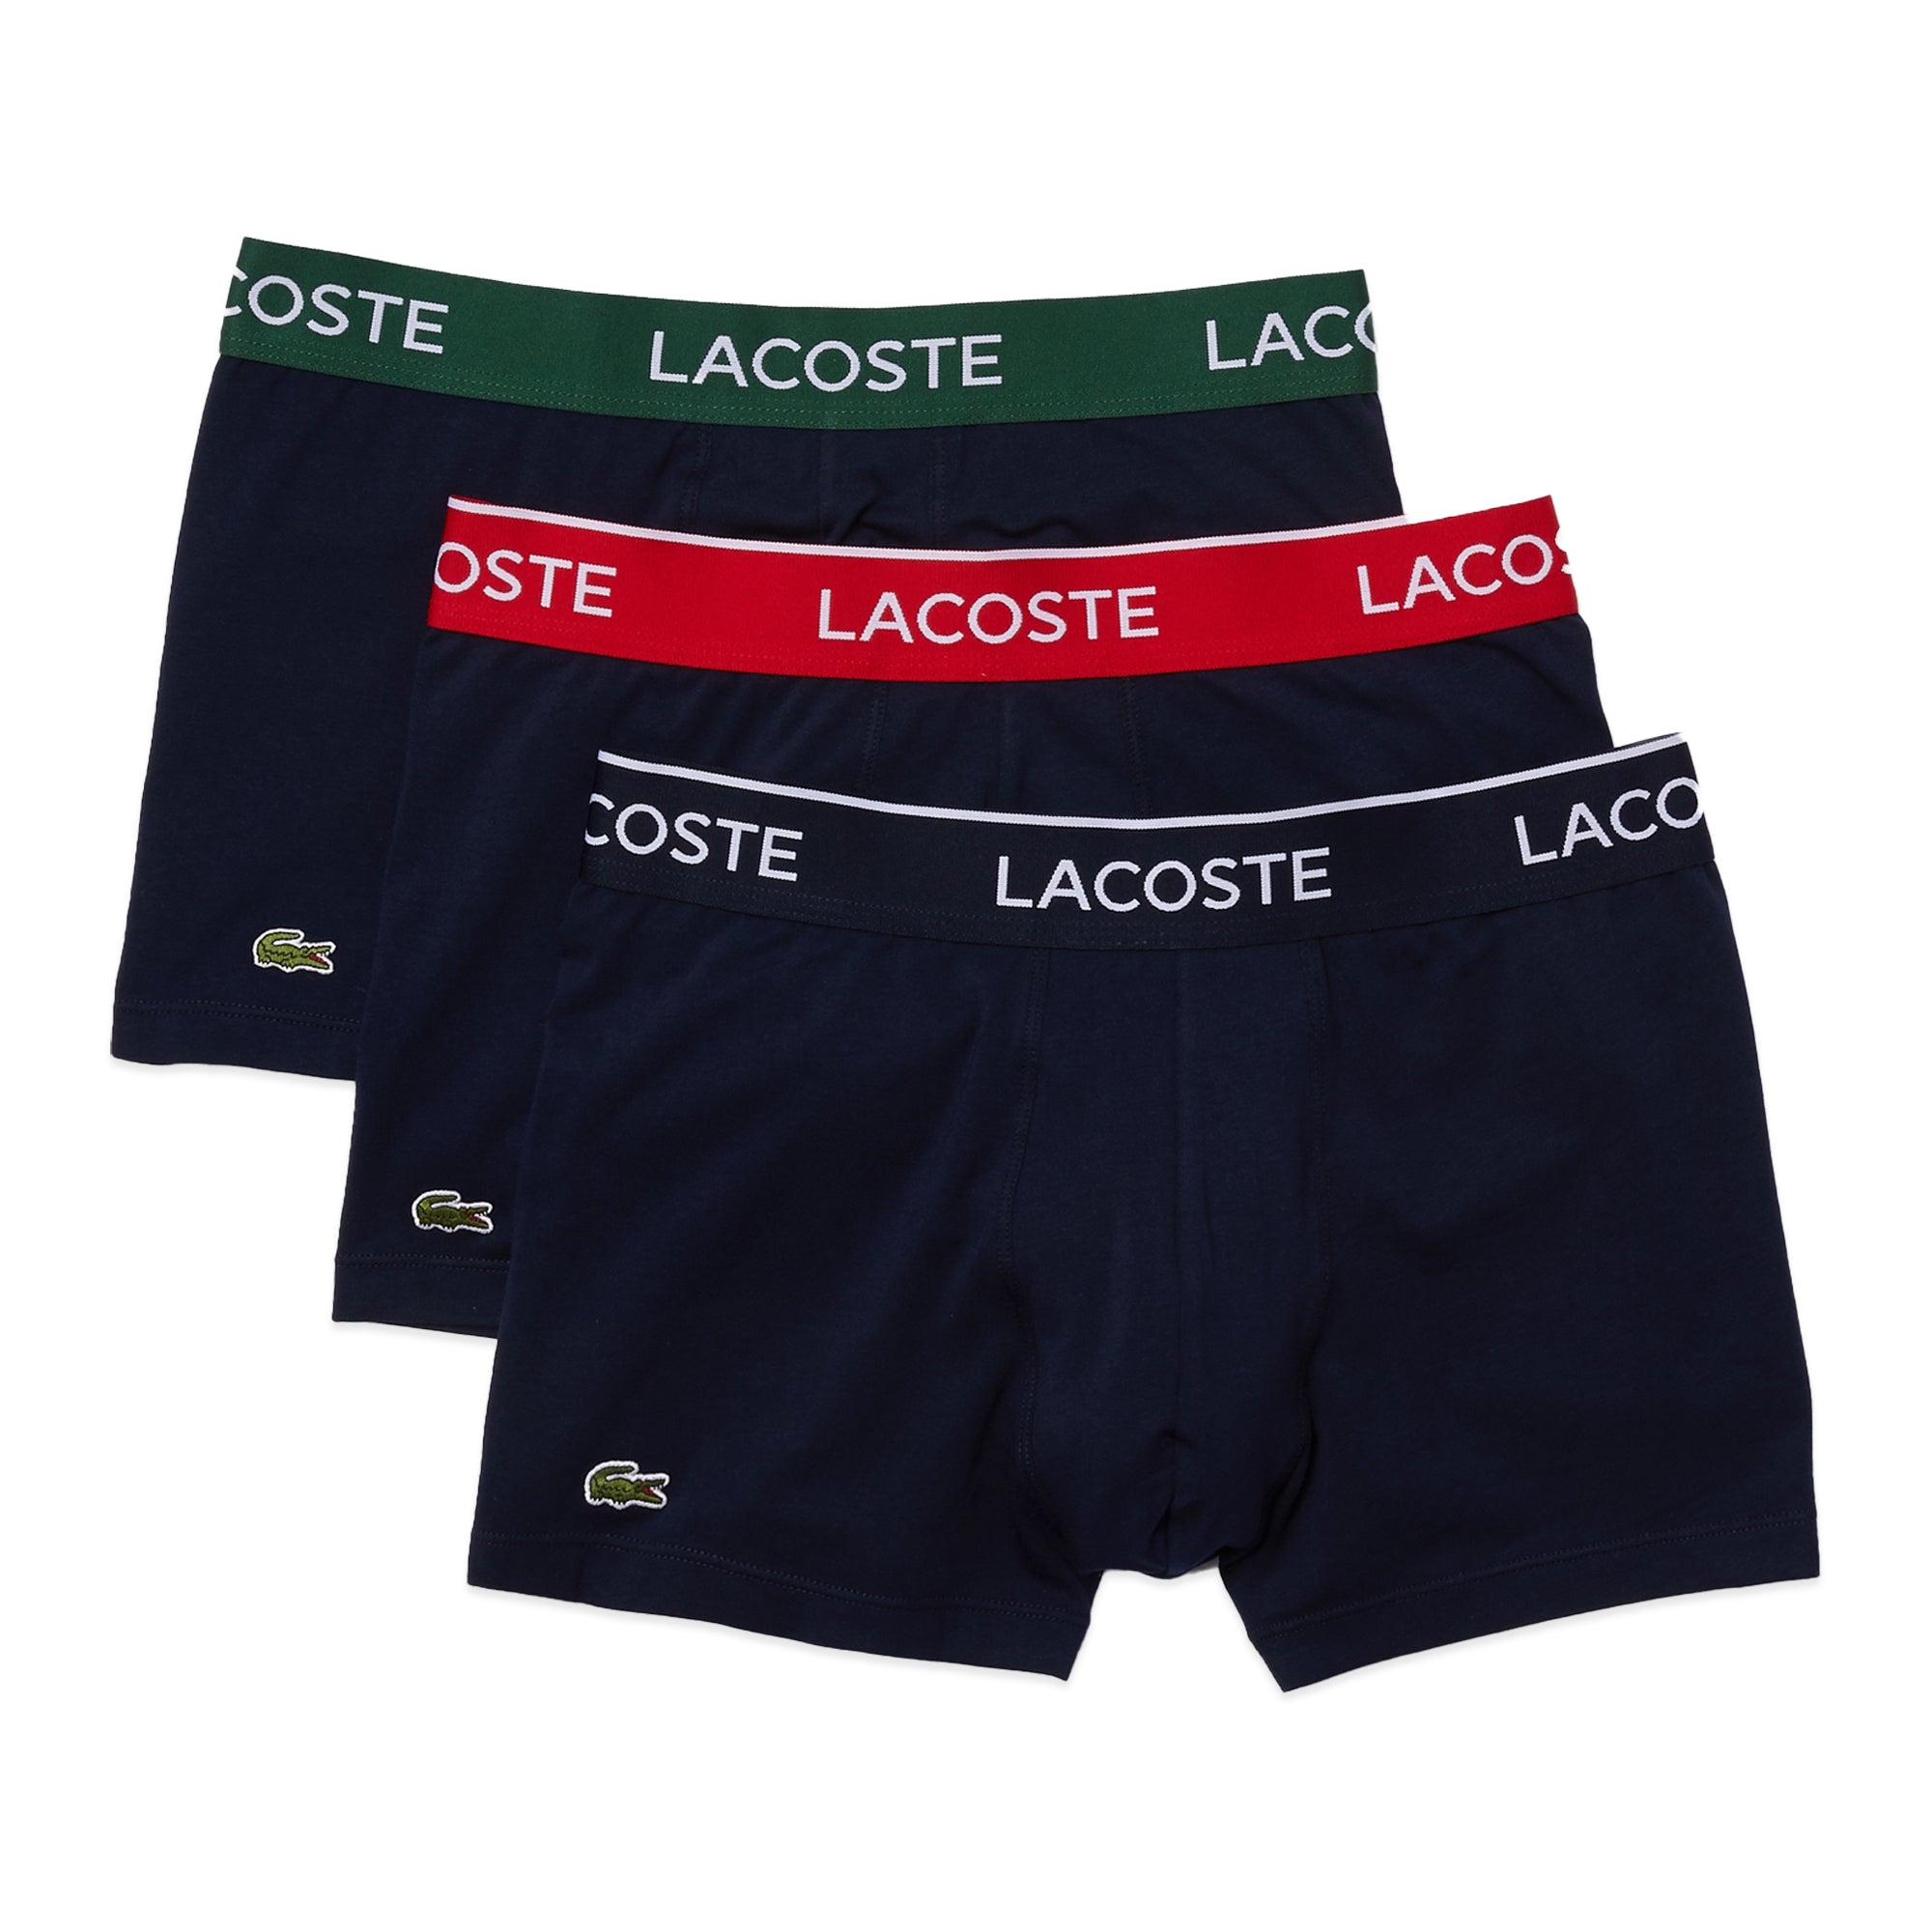 Buy Lacoste Men's Cotton Blend Modern Regular Fit Trunks (Pack of 1)  (5H9953QRN_Multicolor_S) at